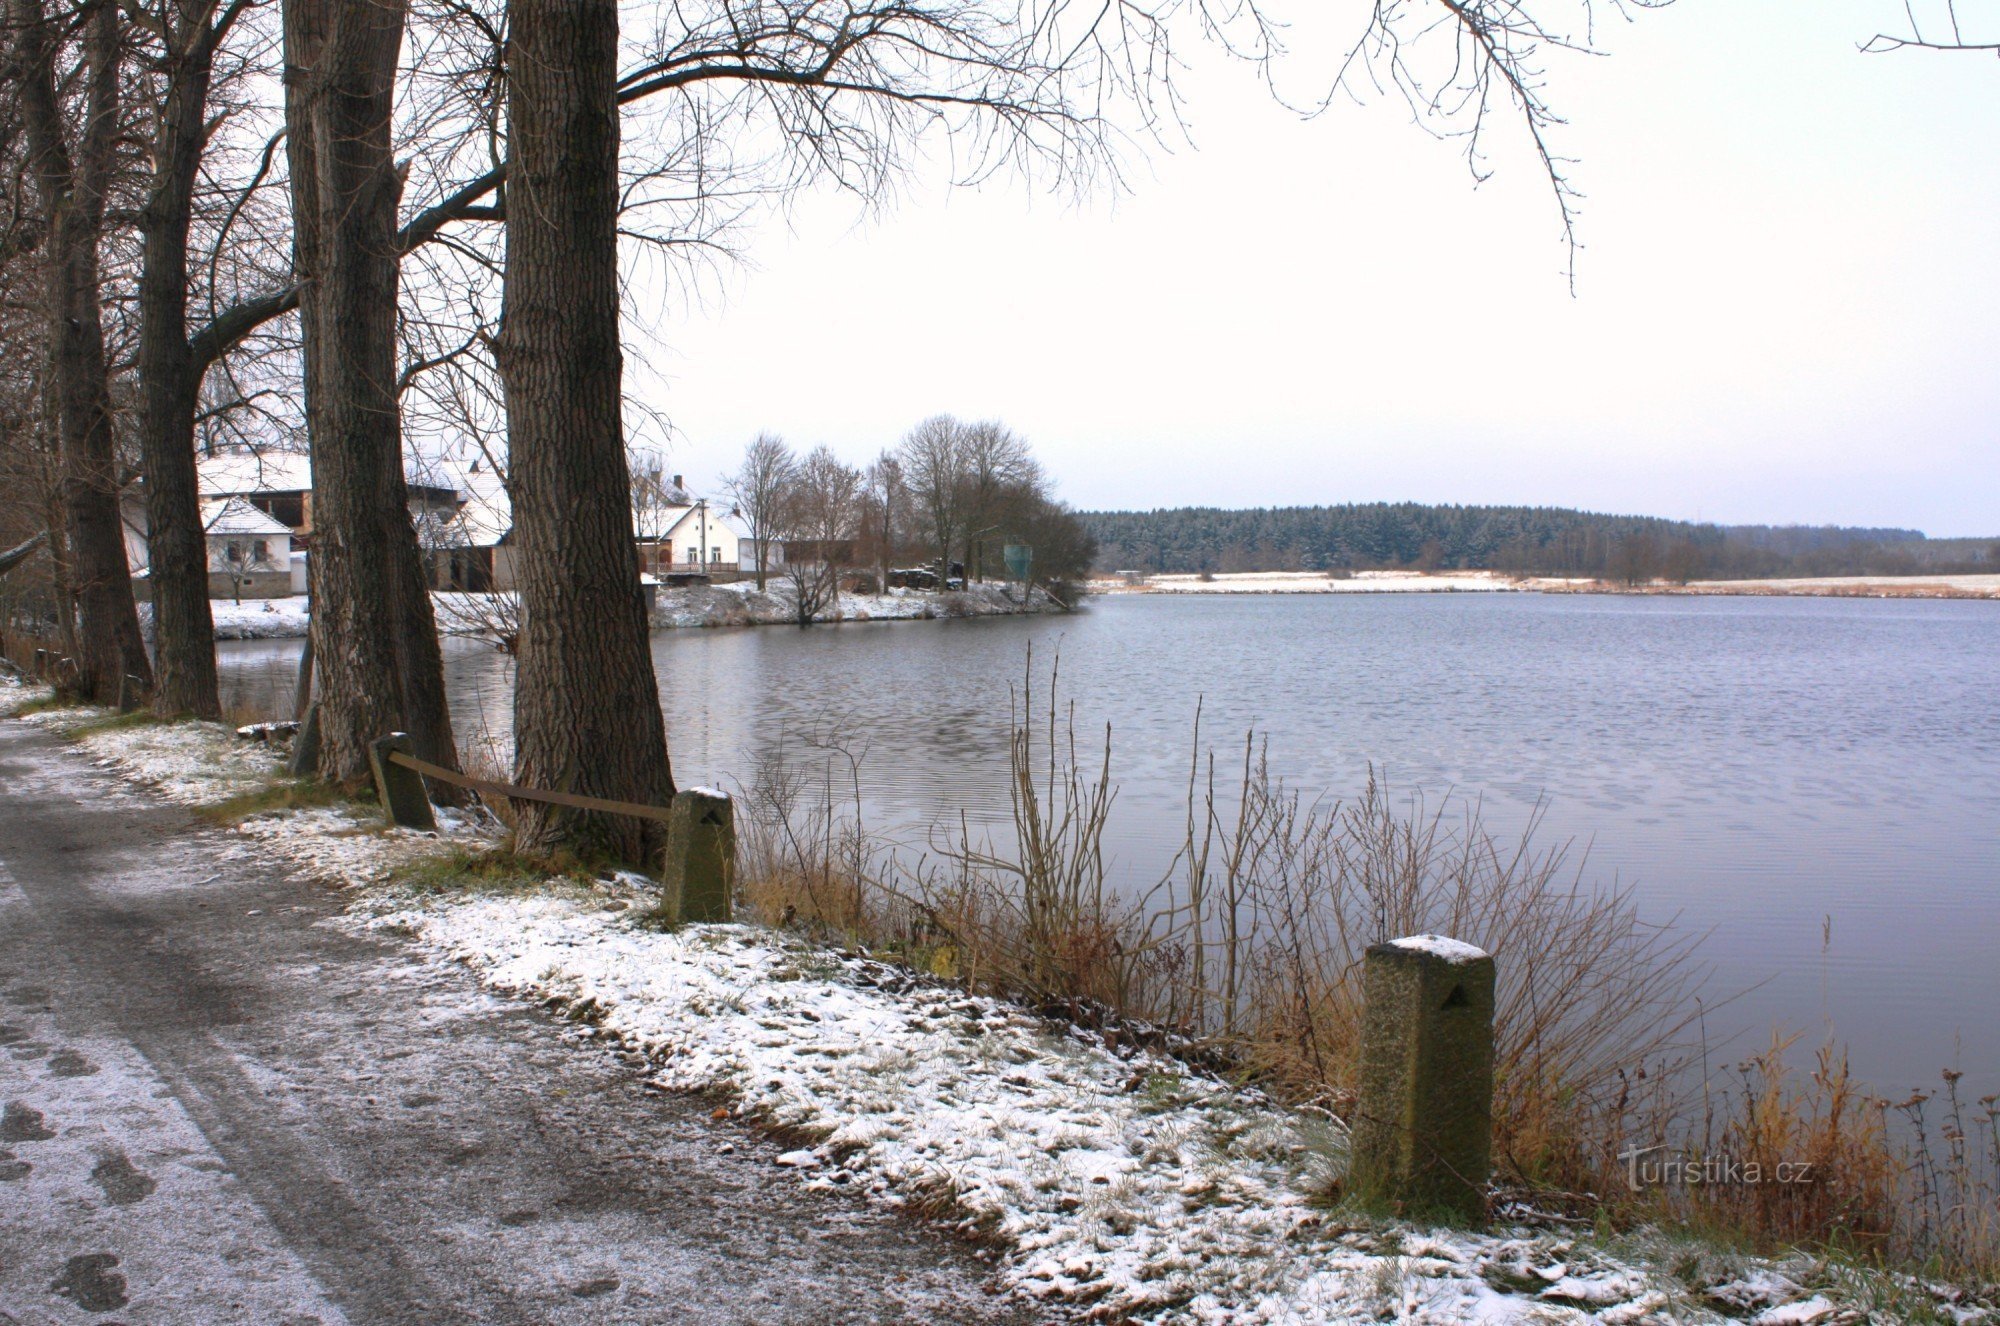 Pohled na rybník z hráze po které vede modře značená turistická cesta